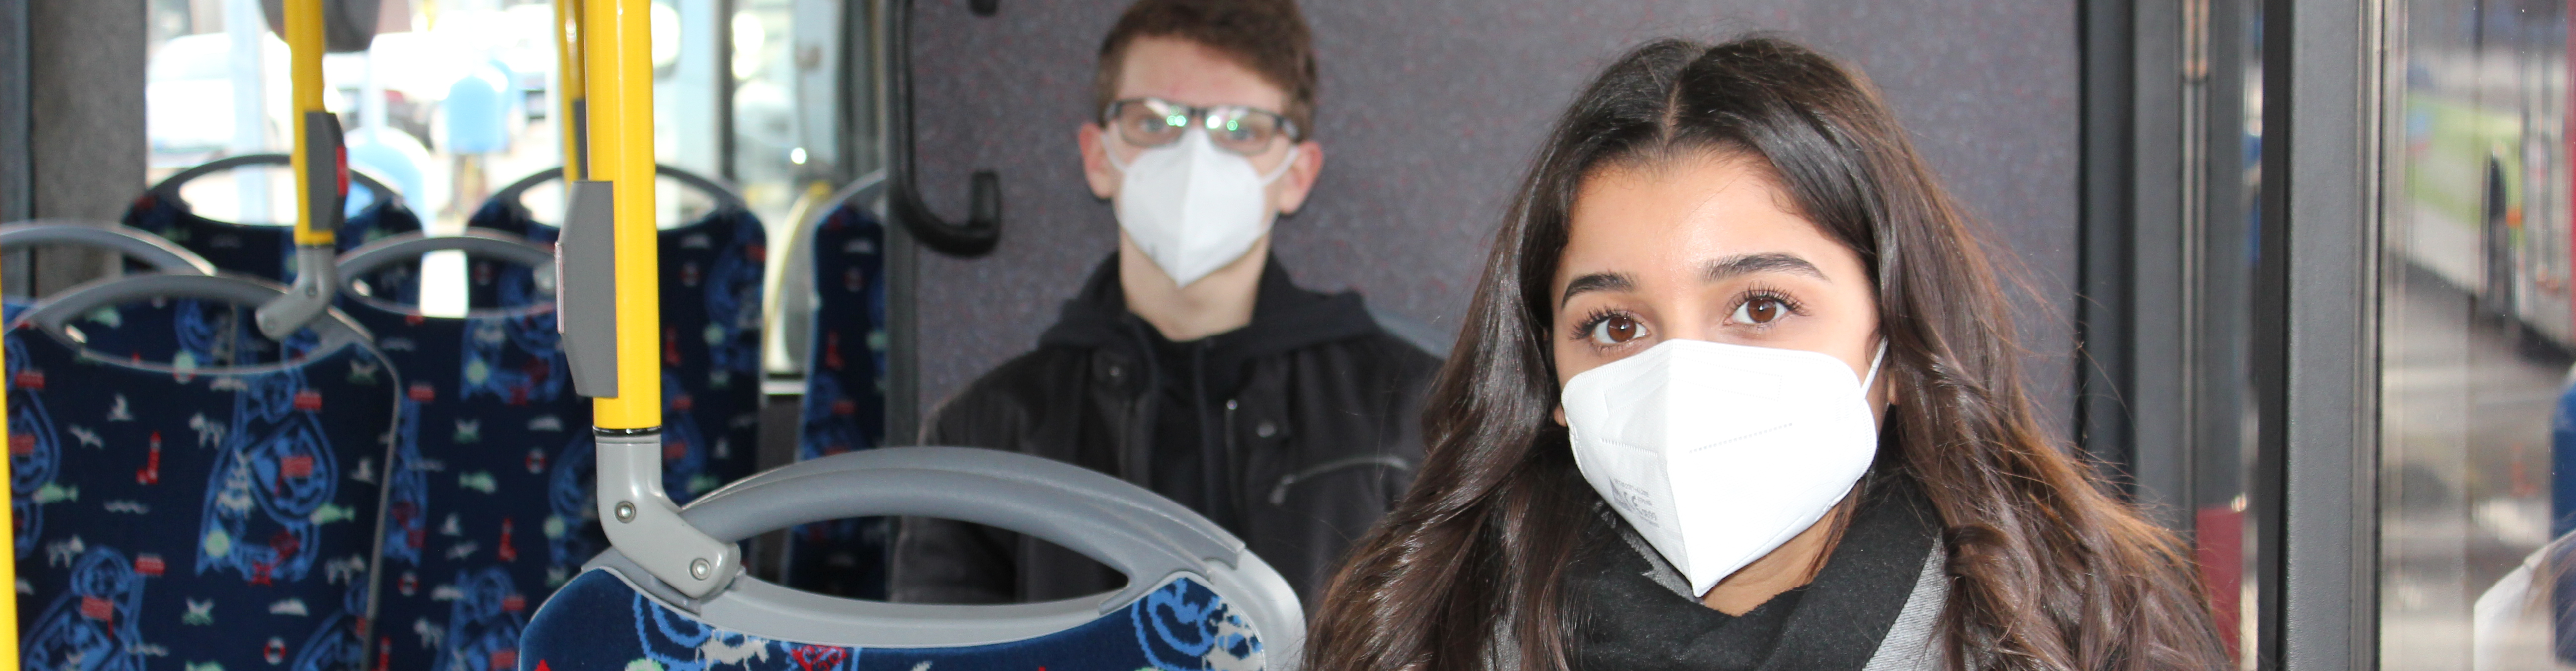 Ein junger Mann und eine junge Frau sitzen im Bus. Beide tragen eine FFP2-Maske.